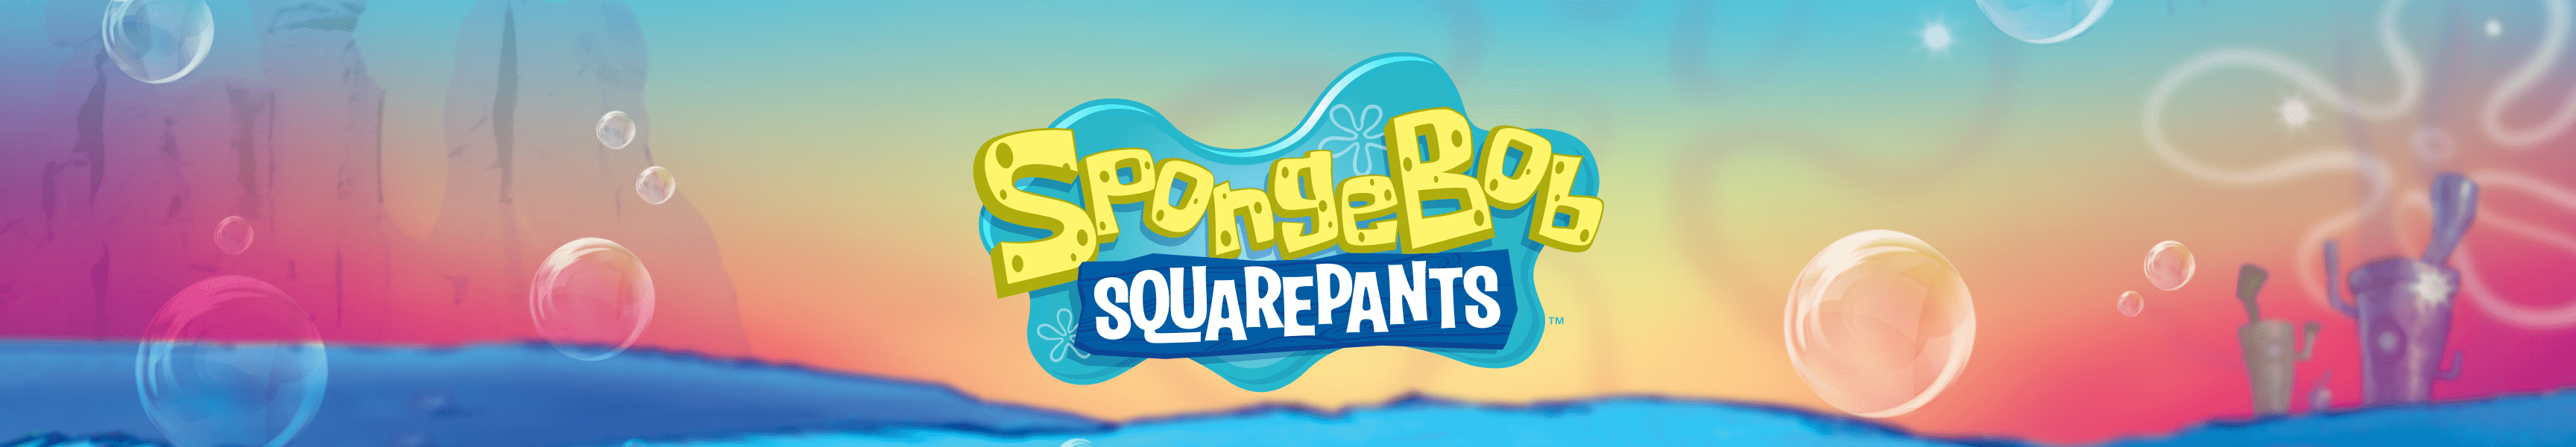 SpongeBob SquarePants Ornaments